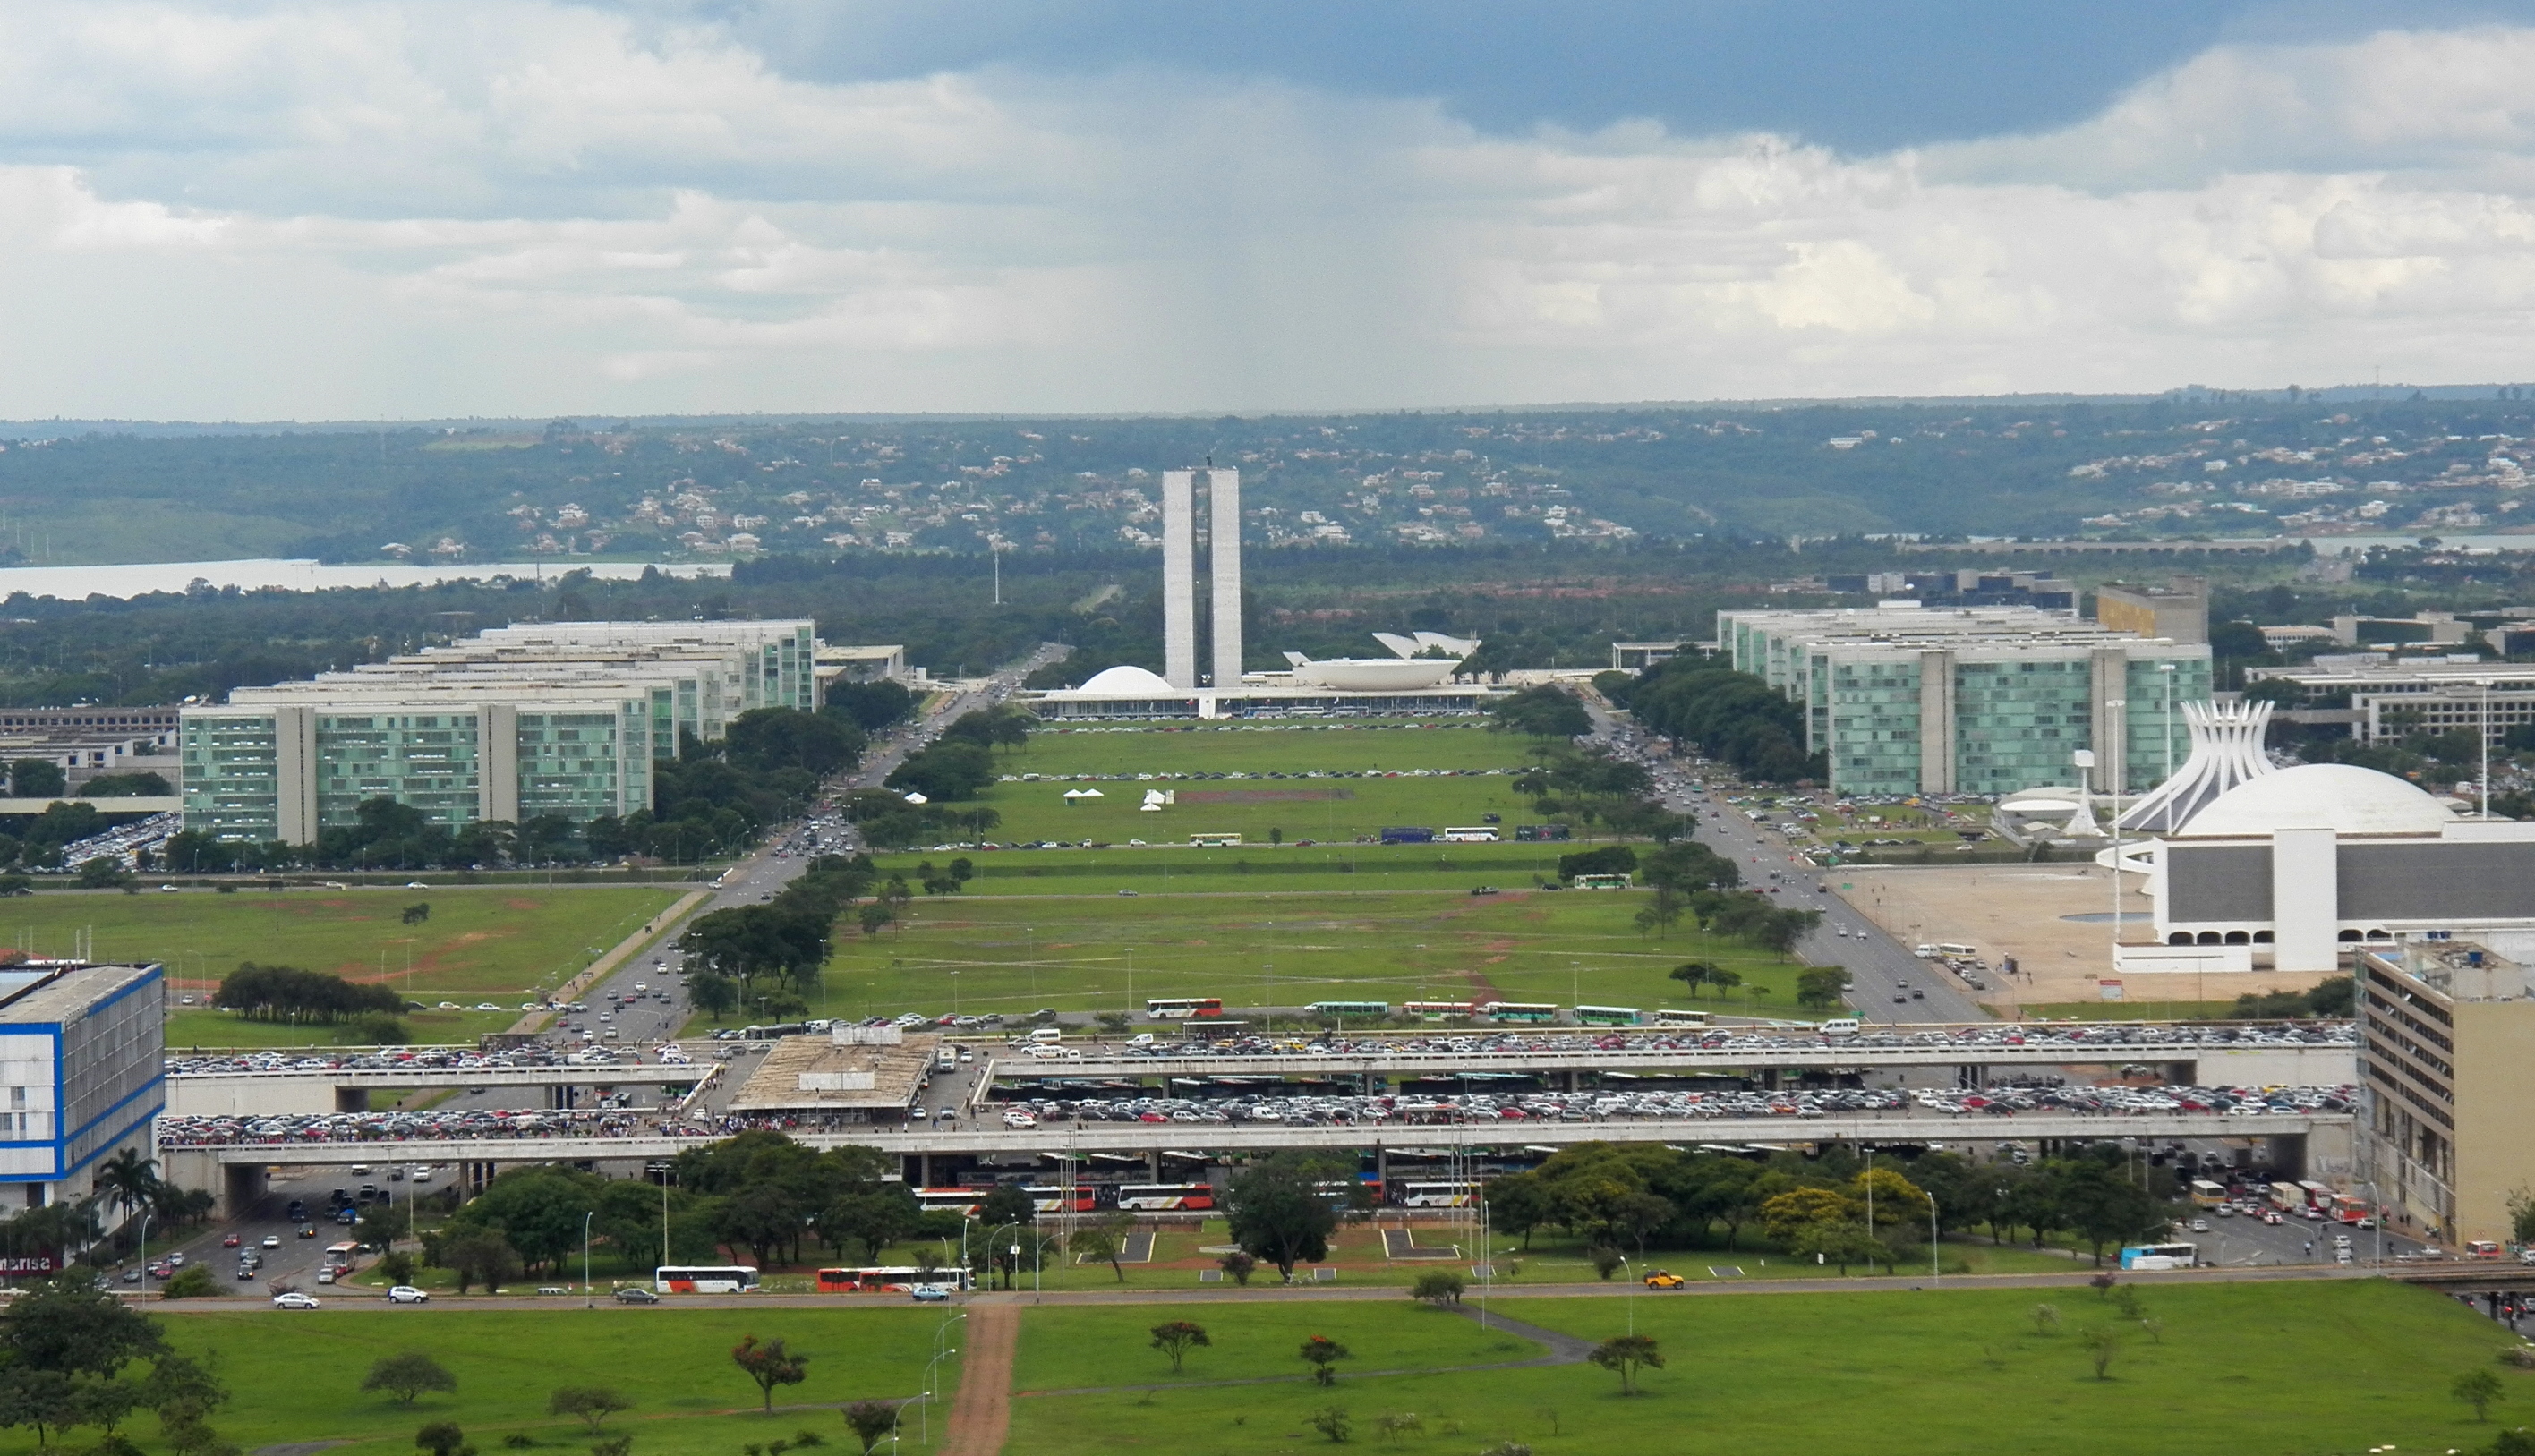 Eixo Monumental - Brasília